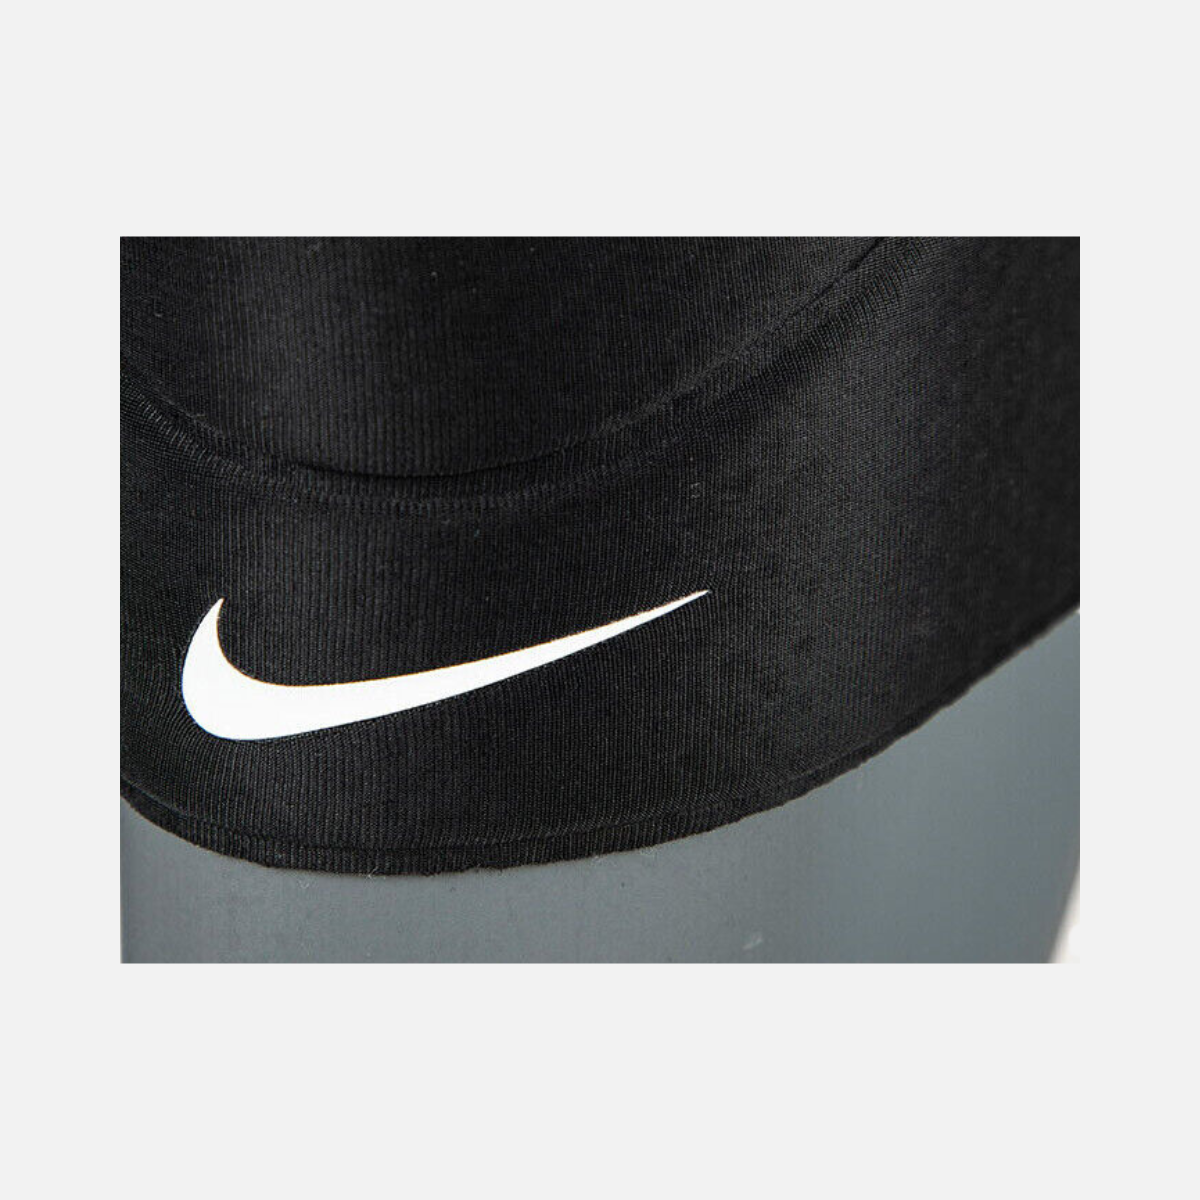 Nike Pro Closed-Patella Knee Sleeve 2.0 at